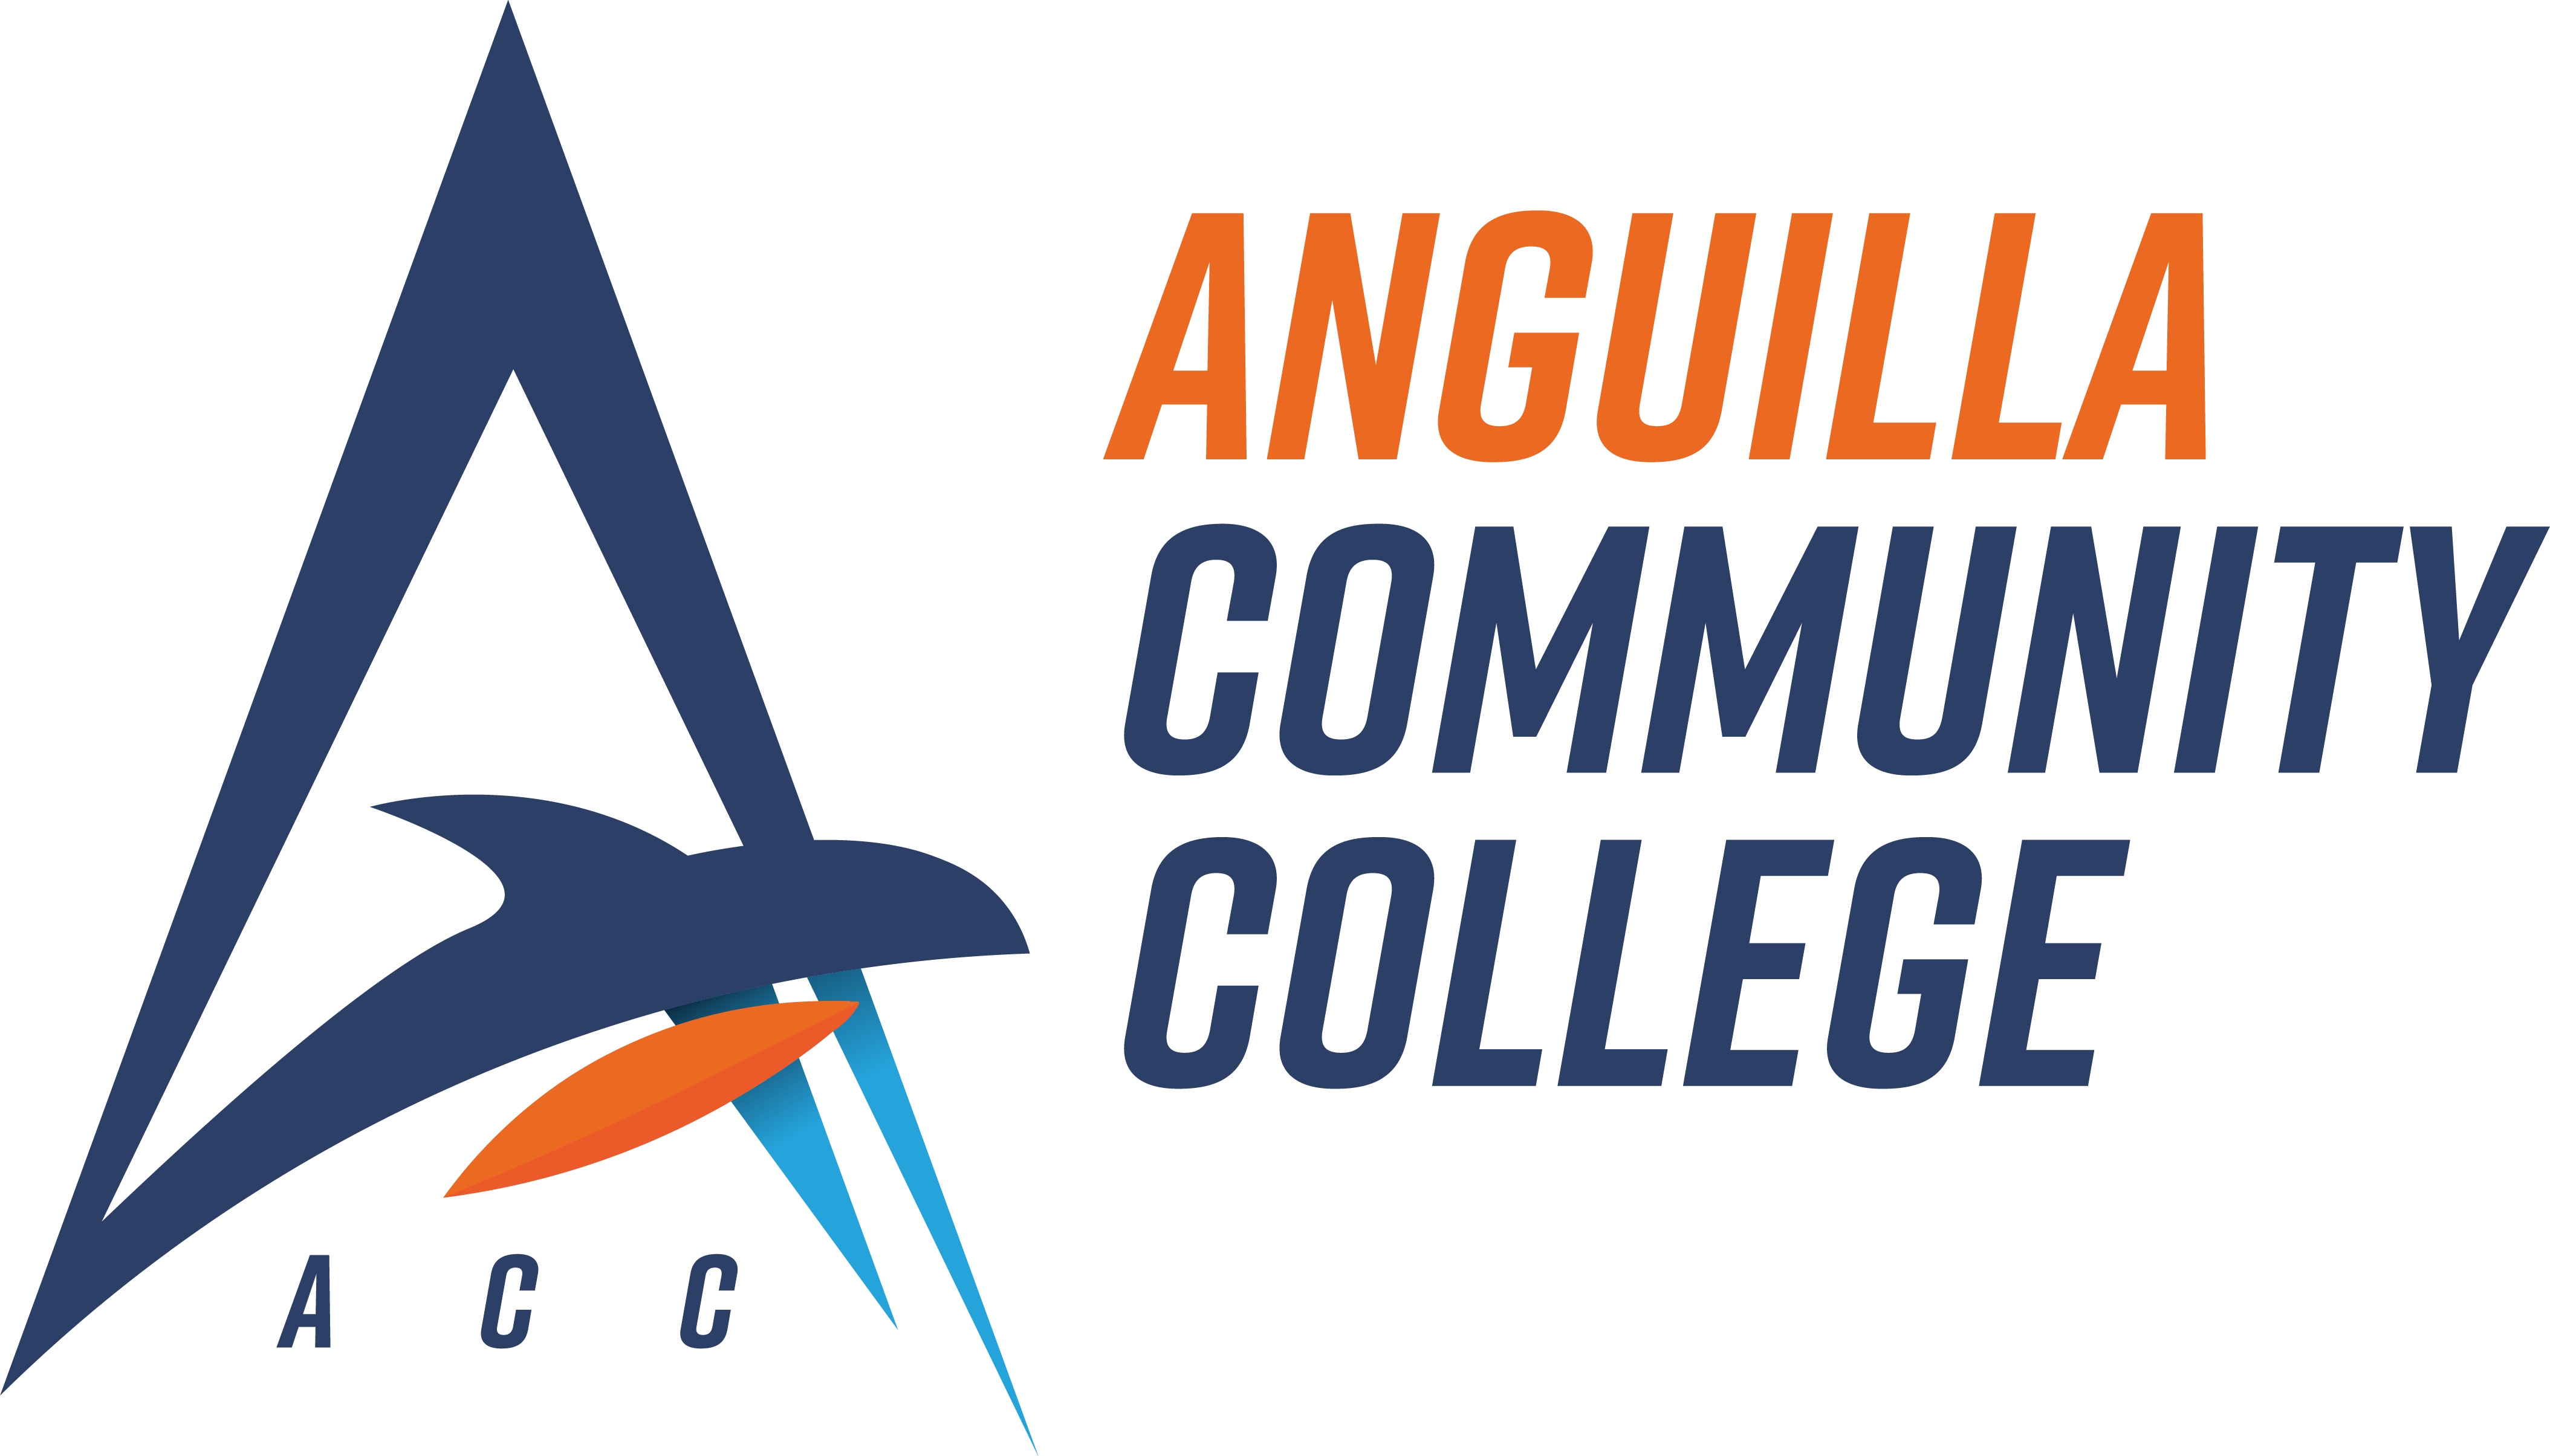 Anguilla Community College